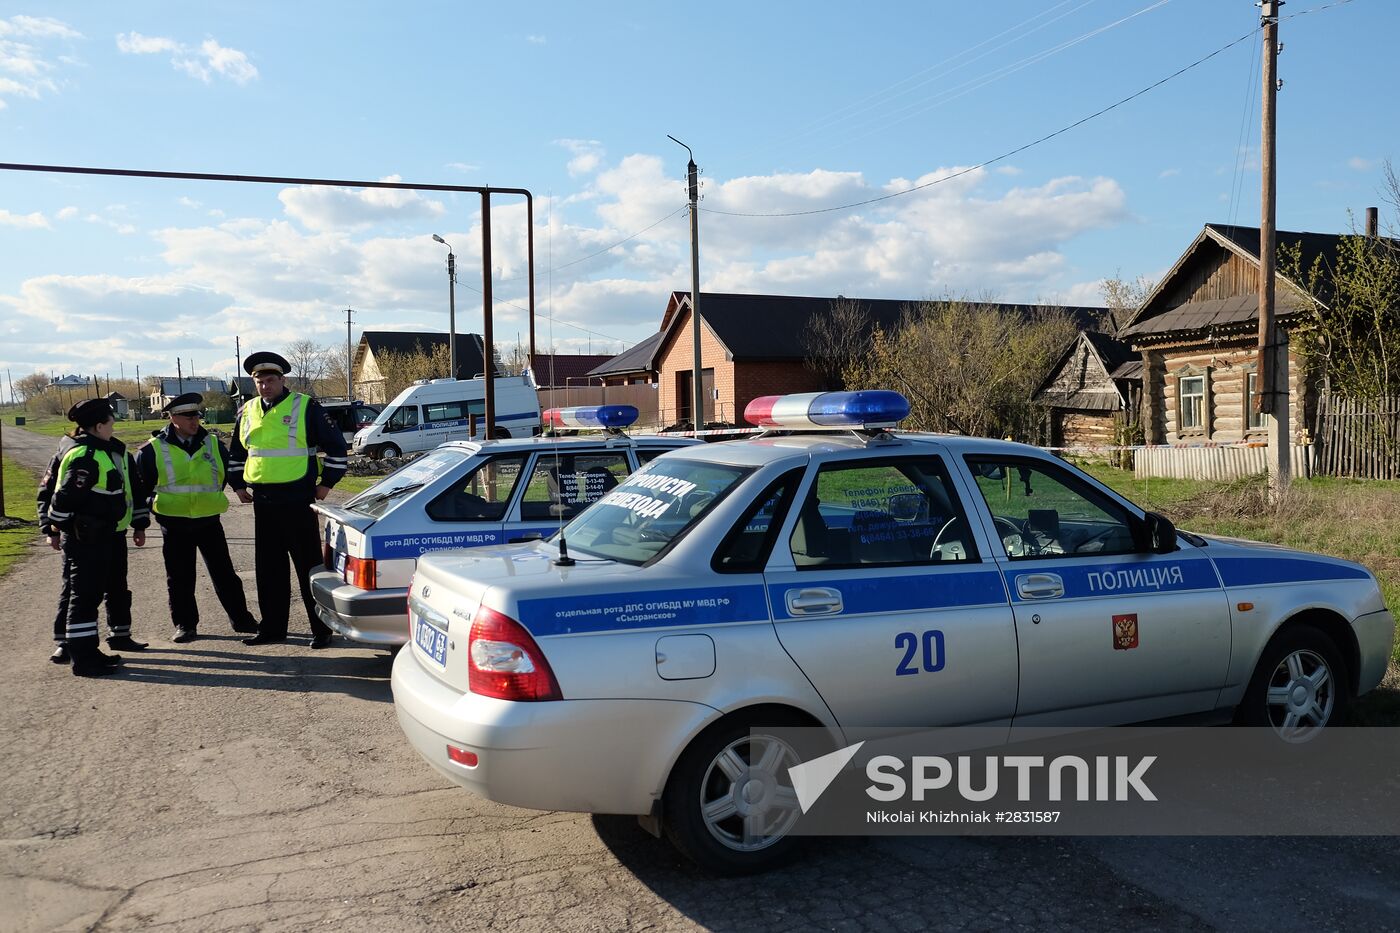 Former chief of Syzran police killed in Samara Region